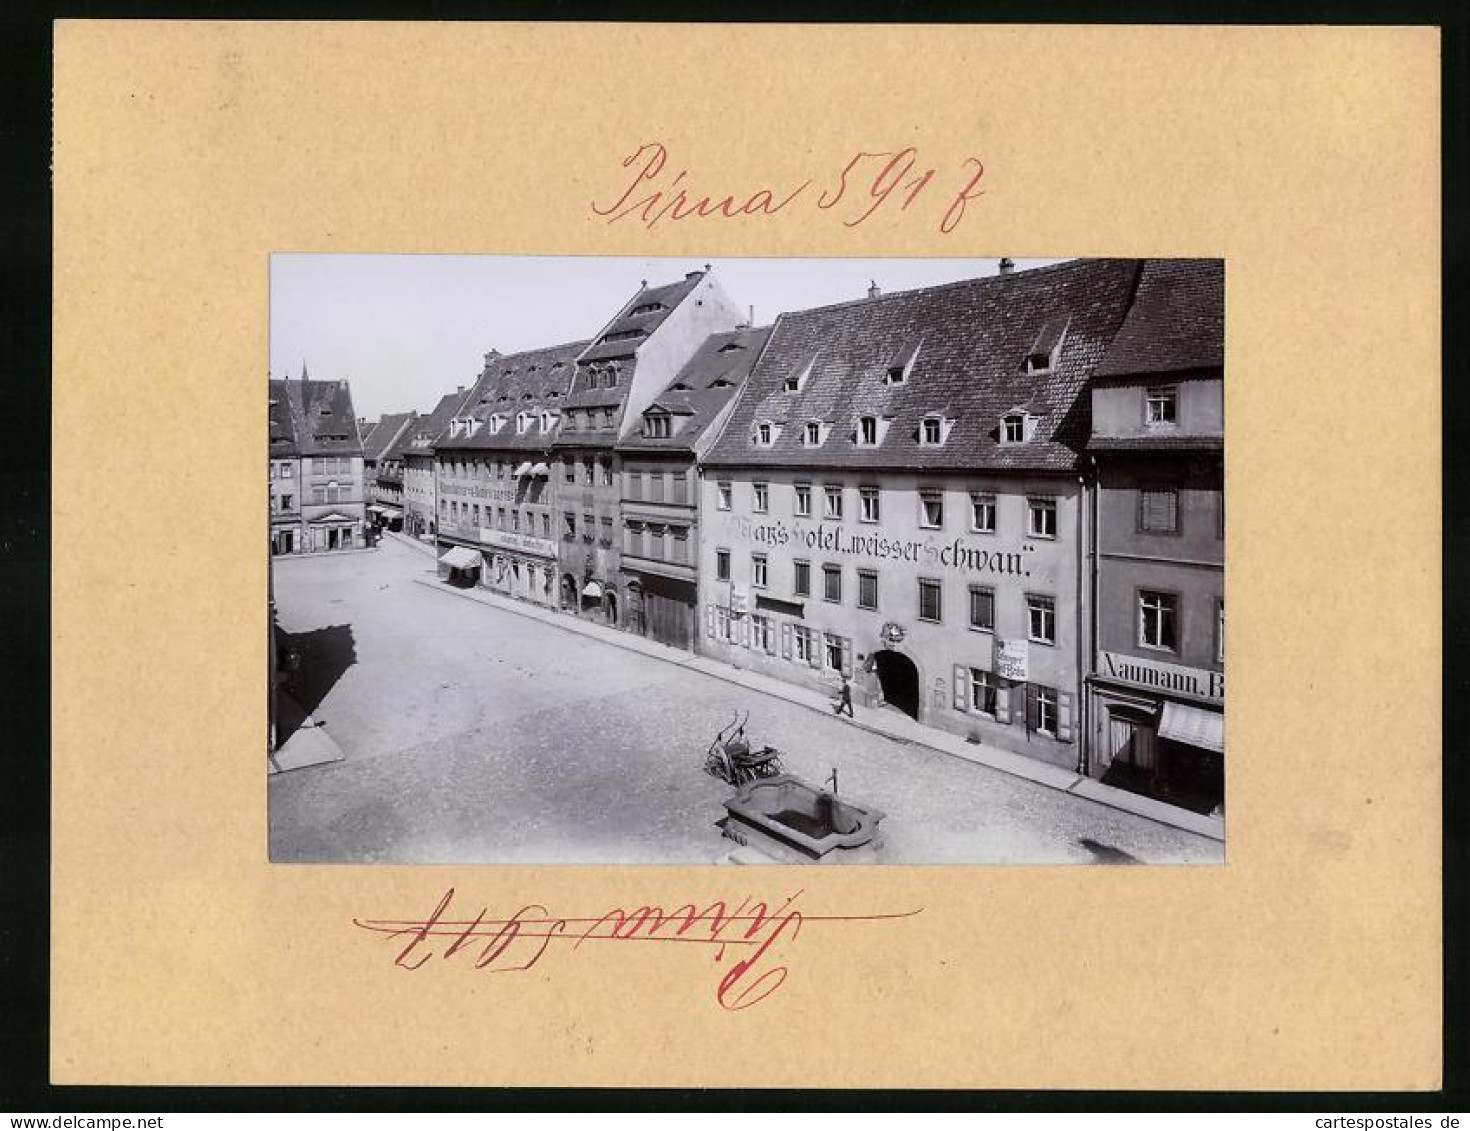 Fotografie Brück & Sohn Meissen, Ansicht Pirna, Untermarkt Mit Hotel Weisser Schwan Und Ladengeschäften  - Lieux